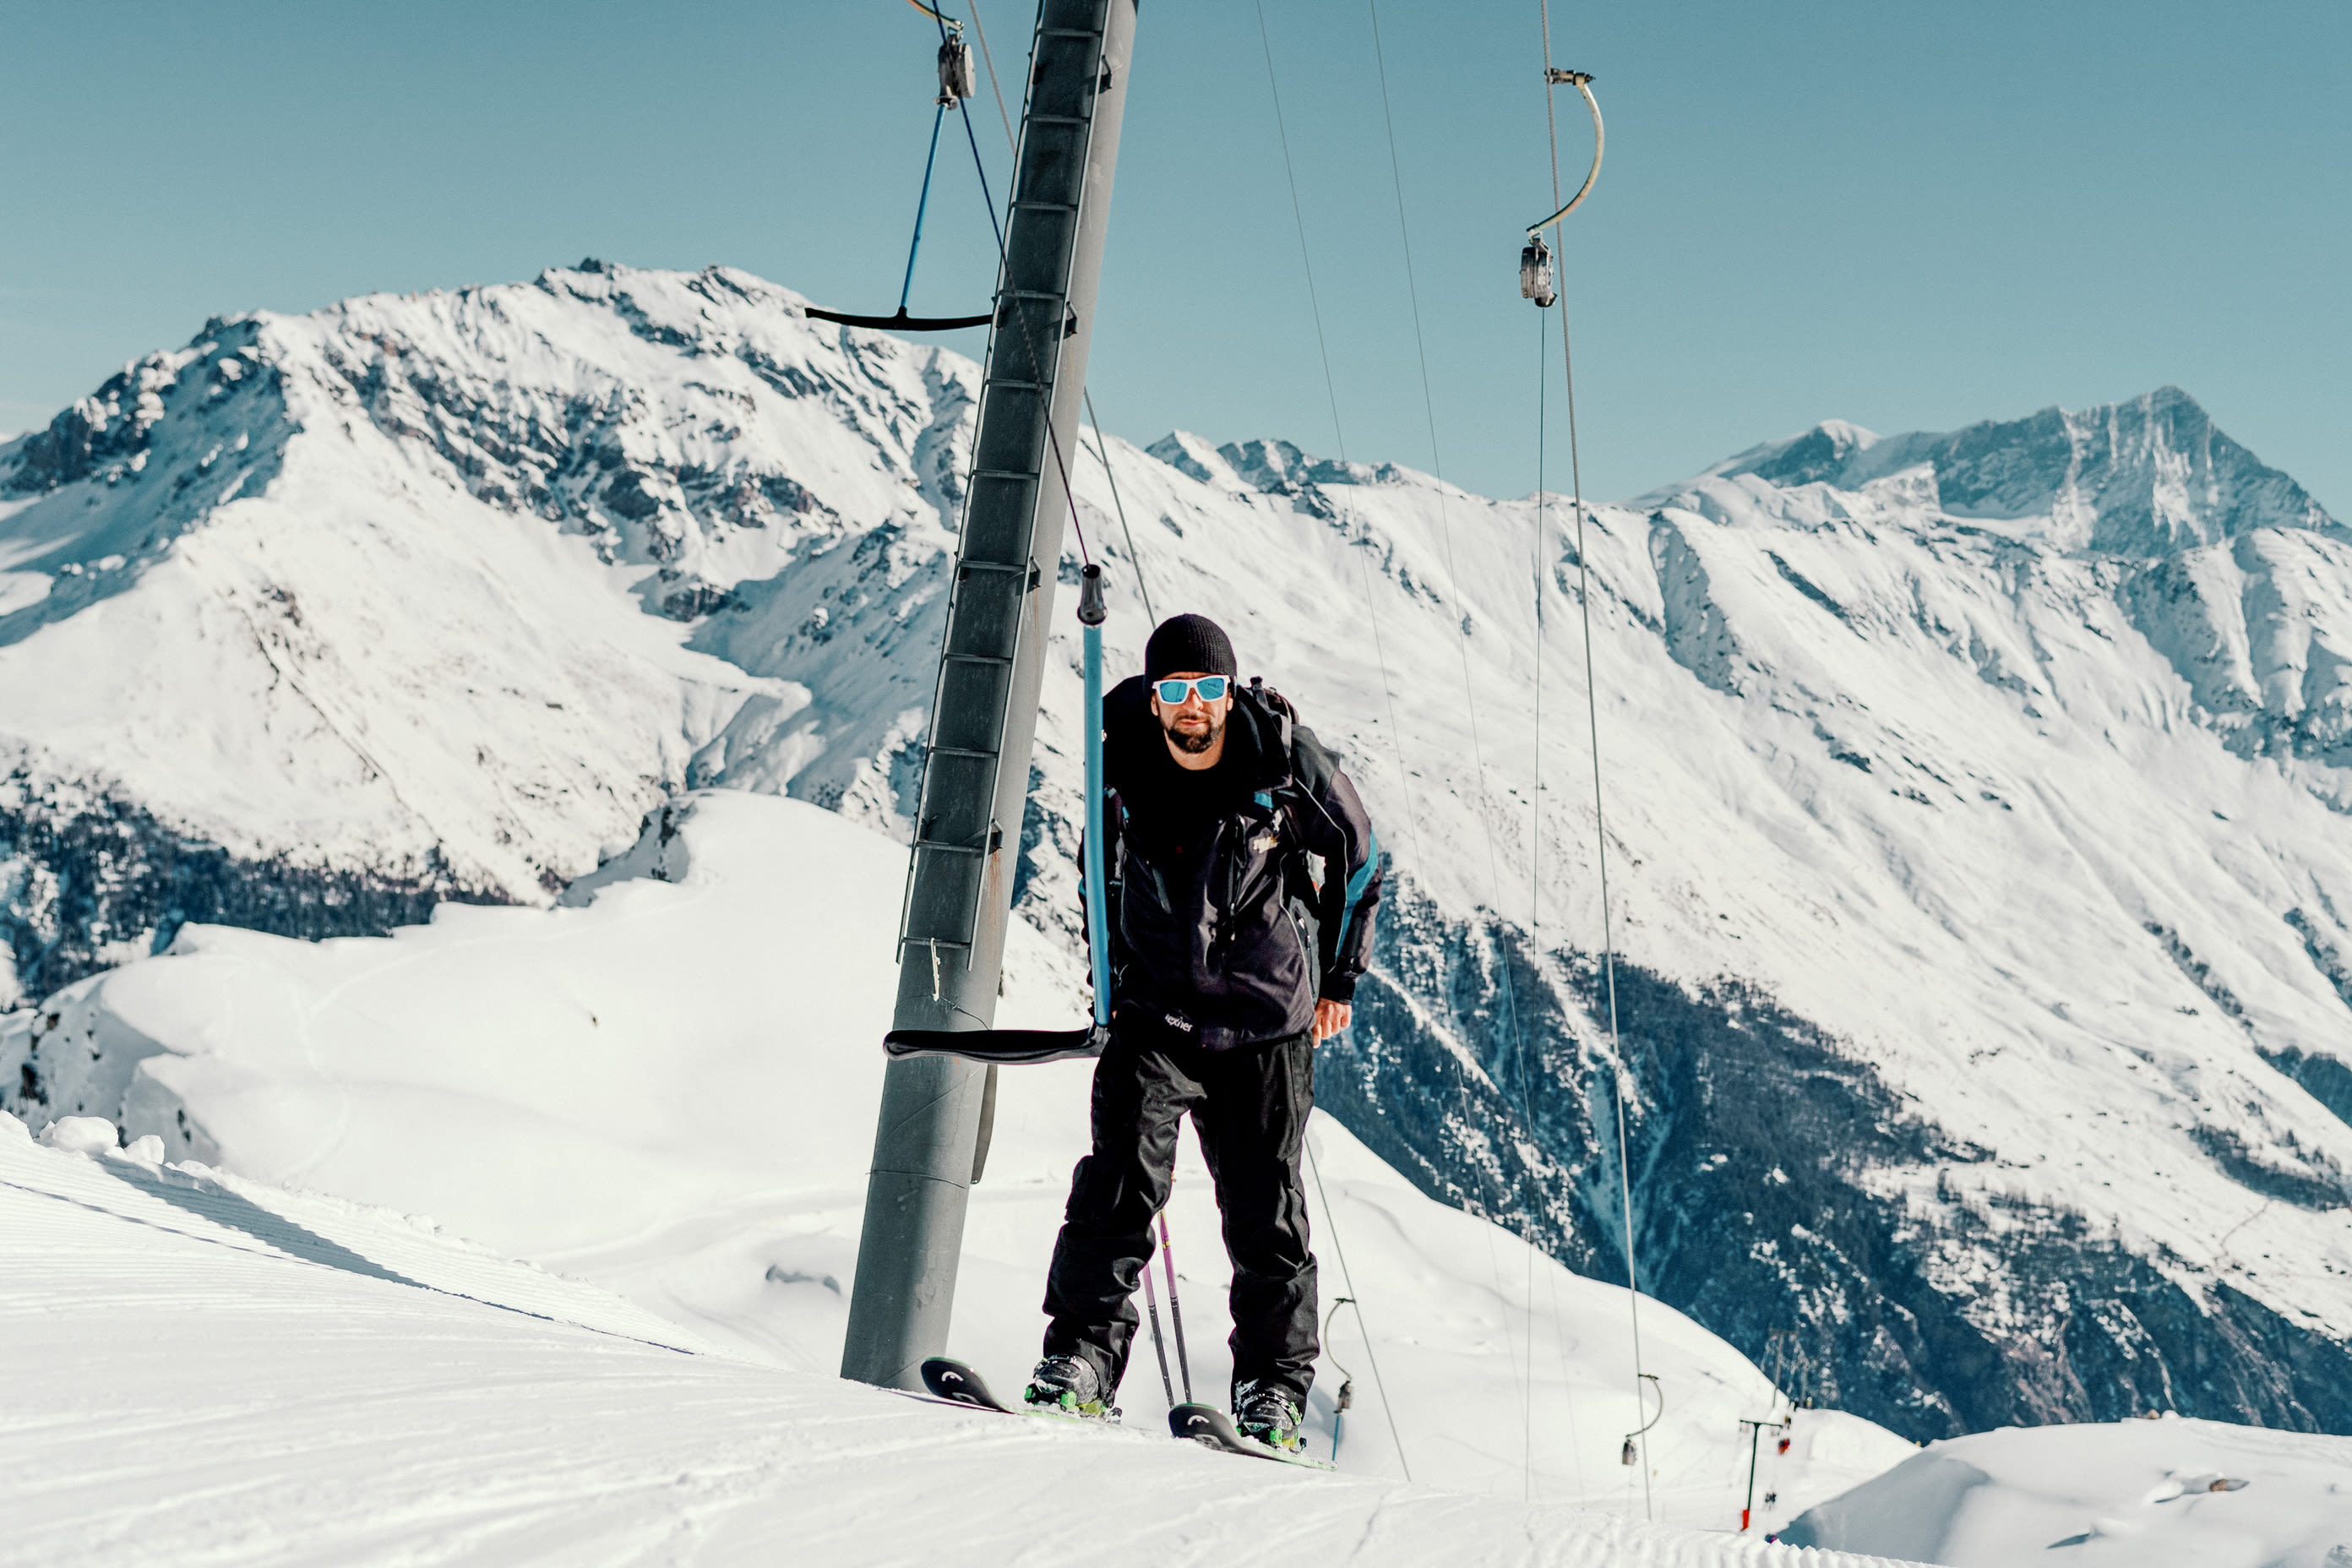 Marcio am Skilift mit Blick auf den Gipfel, Wallis, Schweiz